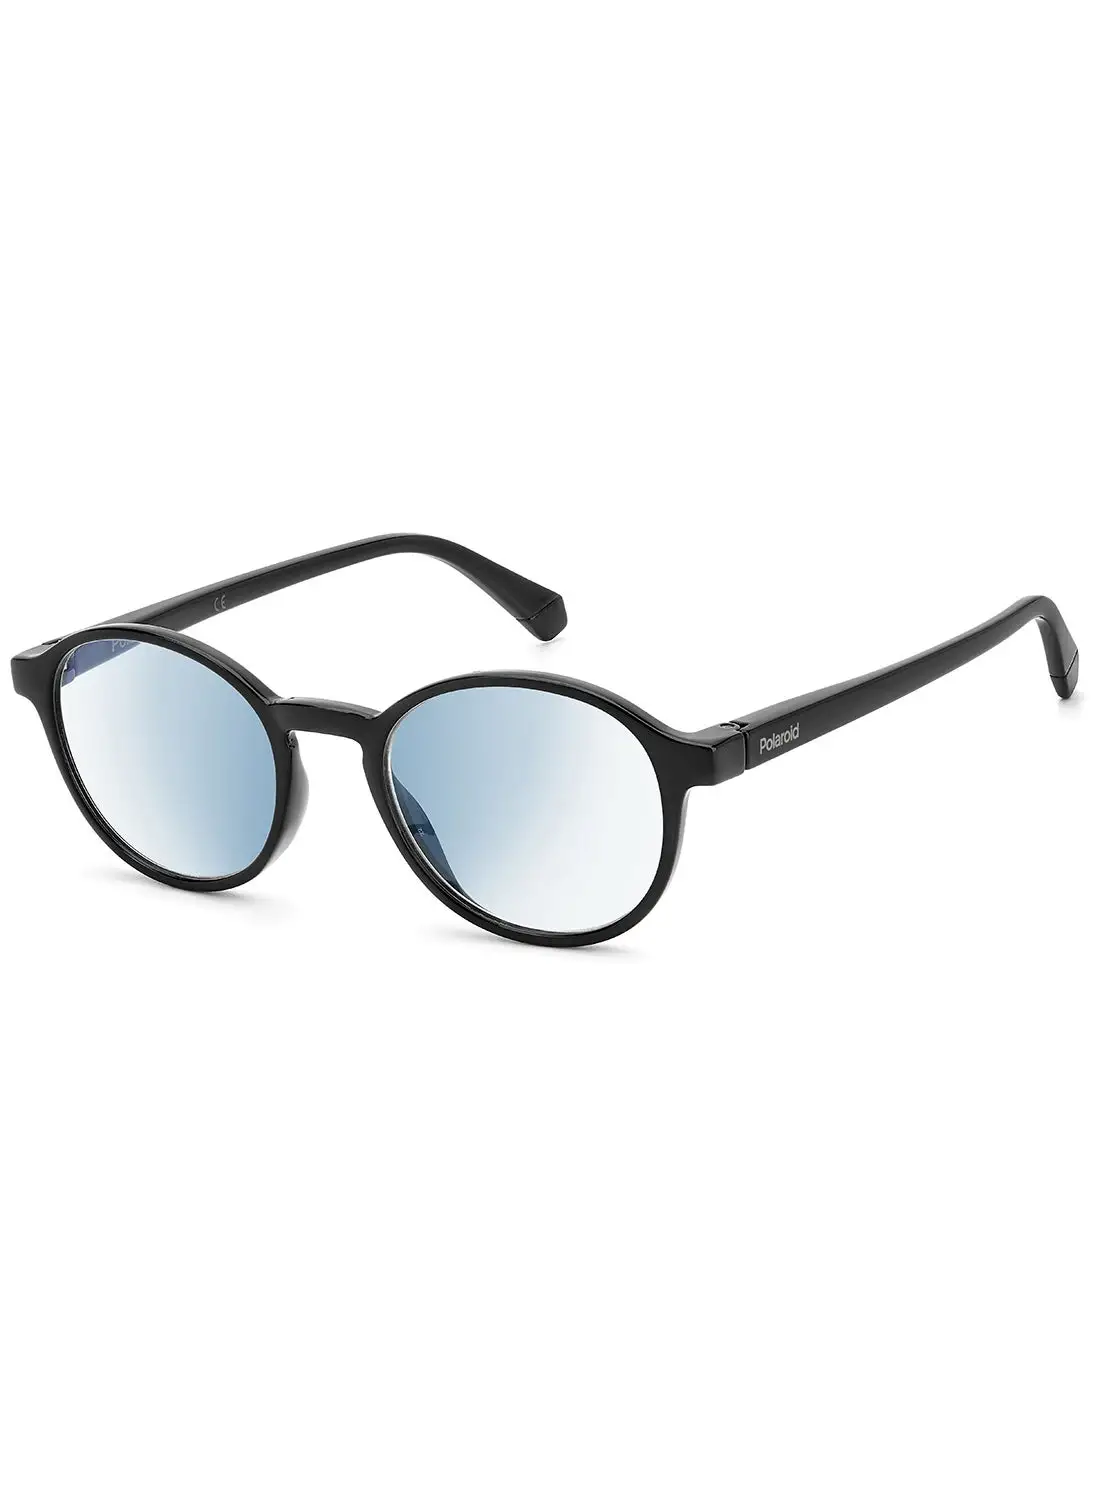 نظارات القراءة بولارويد للجنسين - PLD 0034/R/Bb أسود 48 - مقاس العدسة: 48 ملم